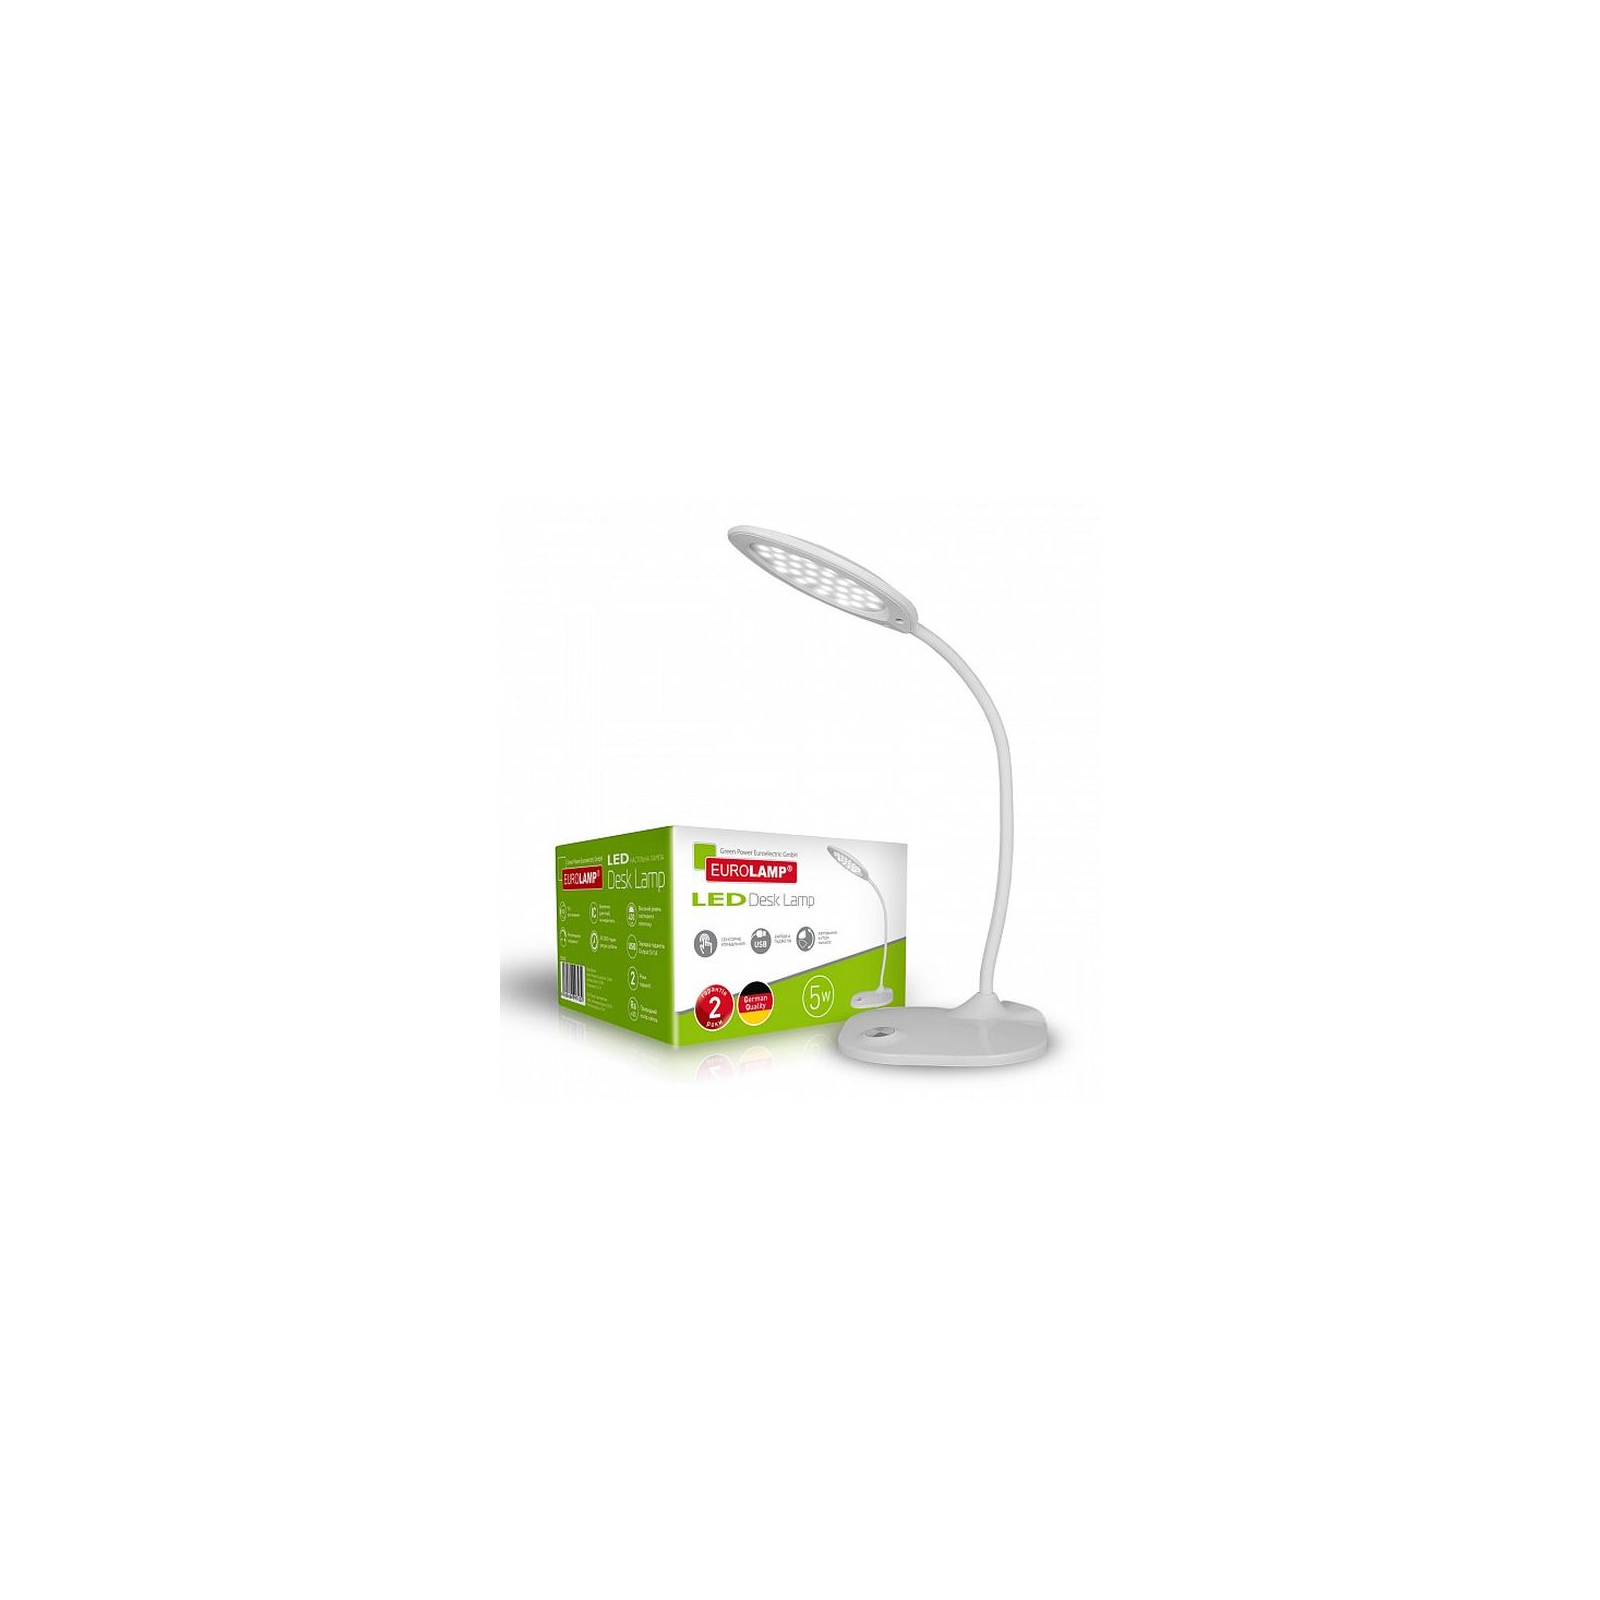 Настольная лампа Eurolamp 5W 5300-5700K (white) (LED-TLG-4(white)) изображение 2